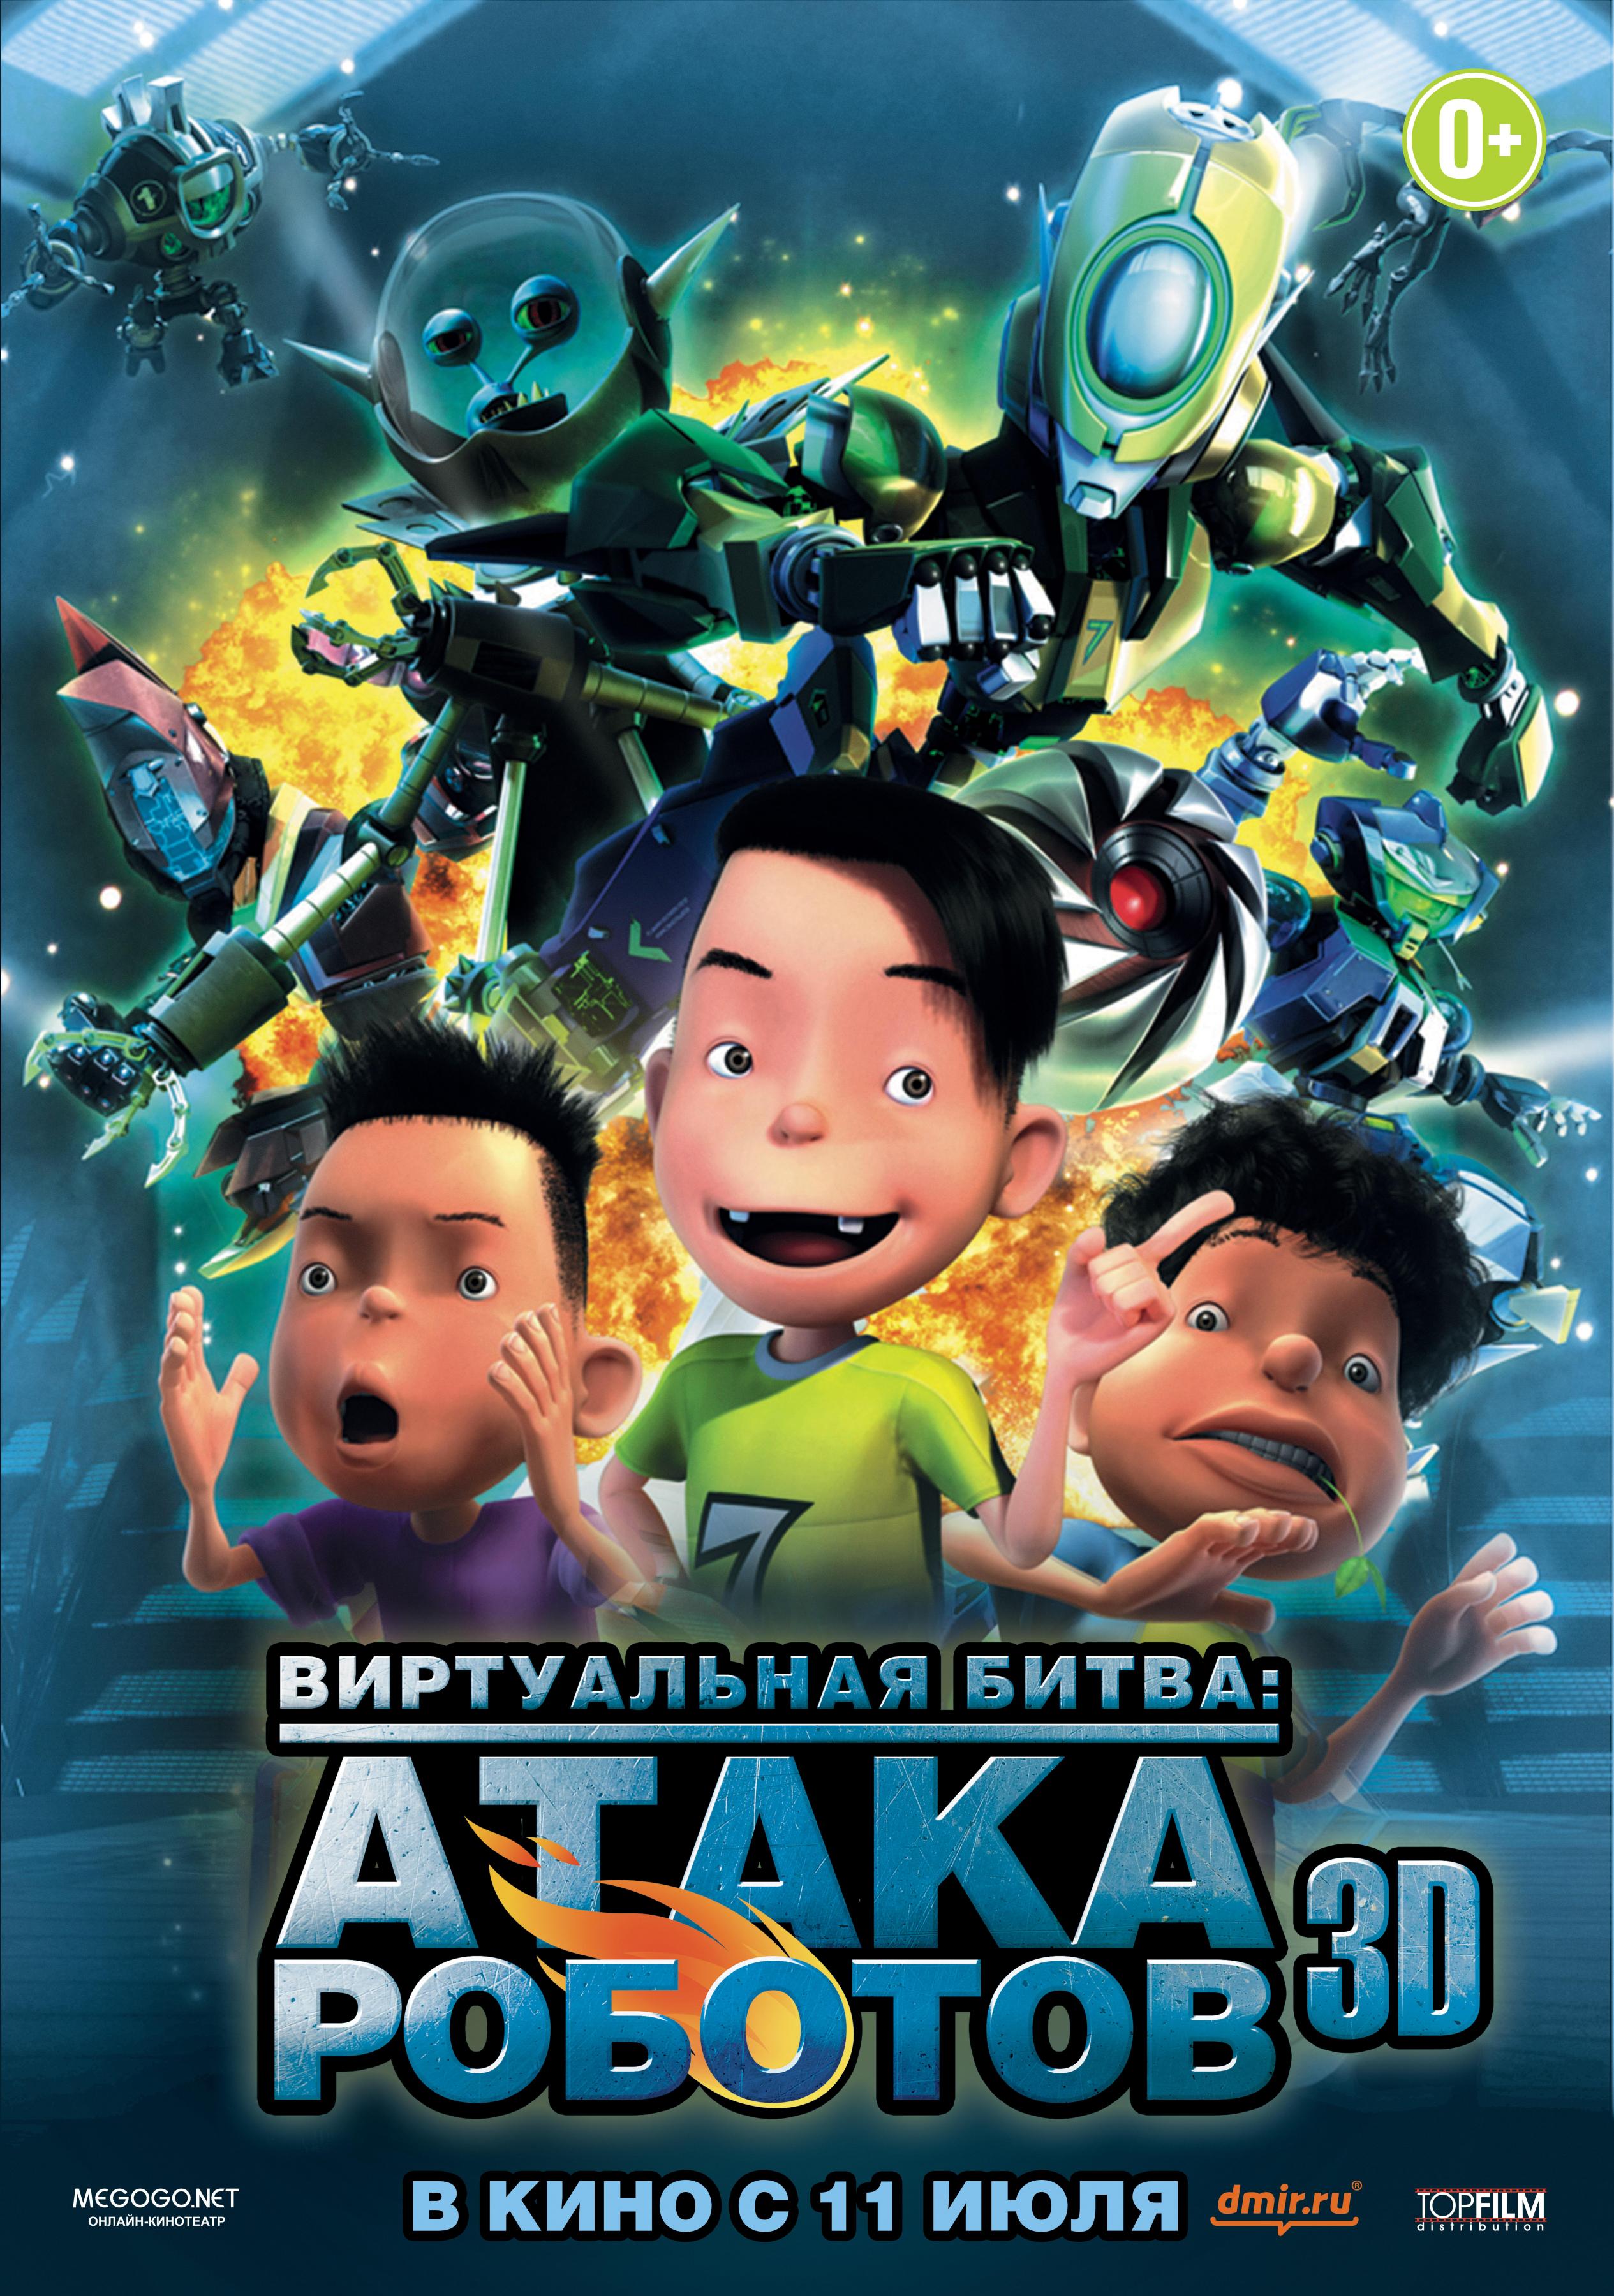 Постер фильма Роботы 3D | Bola Kampung: The Movie